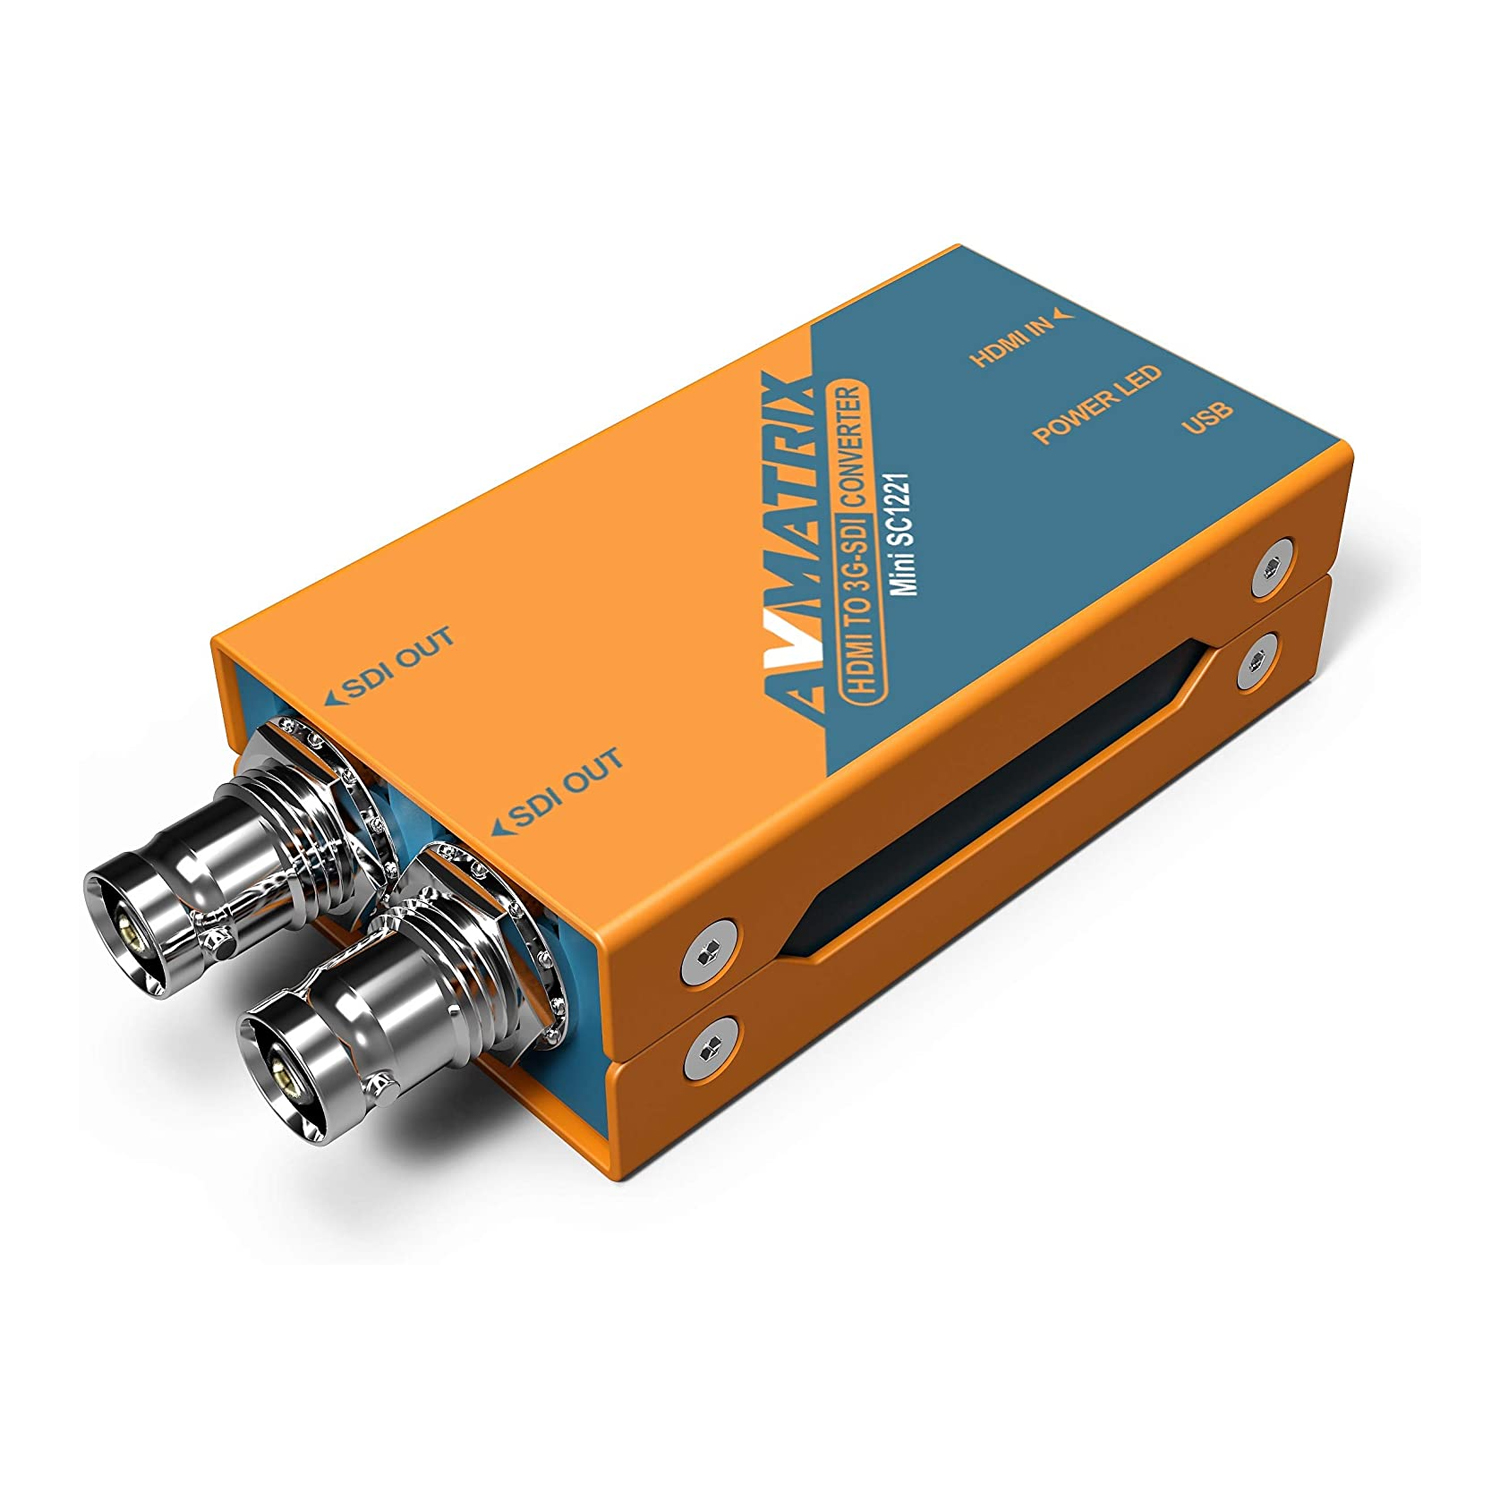 AVmatrix Mini SC1221 HDMI to 3G-SDI Mini Converter